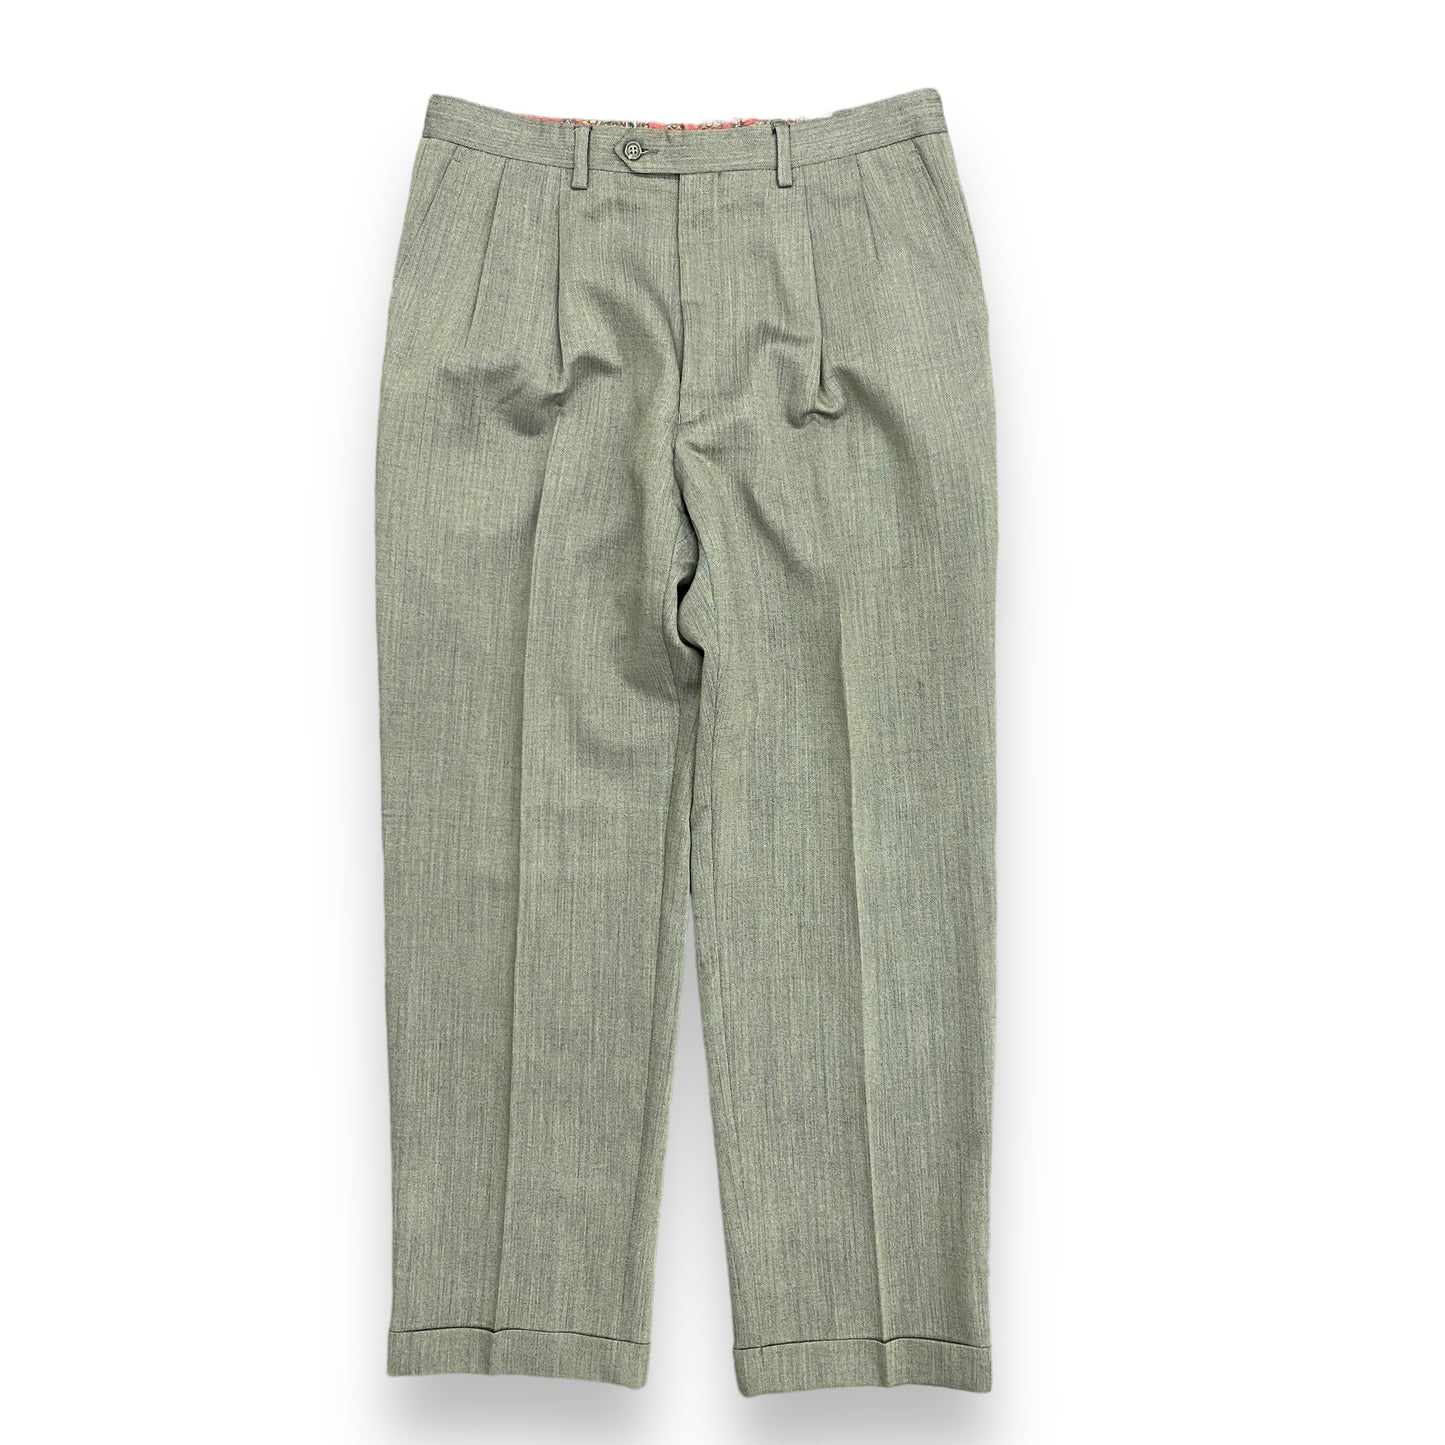 Lauren Ralph Lauren Pleated Pants - 34"x31"